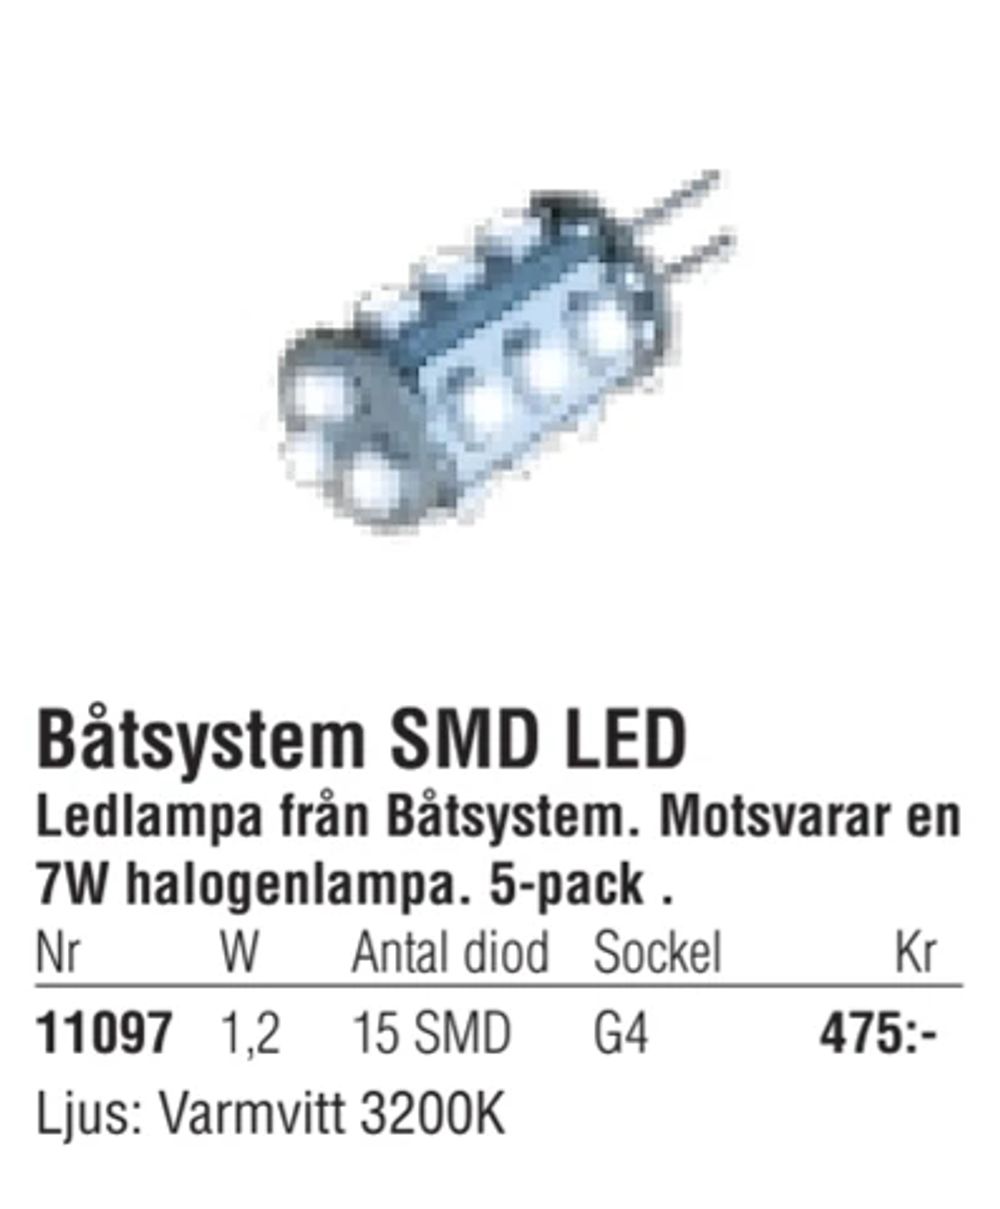 Erbjudanden på Båtsystem SMD LED från Erlandsons Brygga för 475 kr